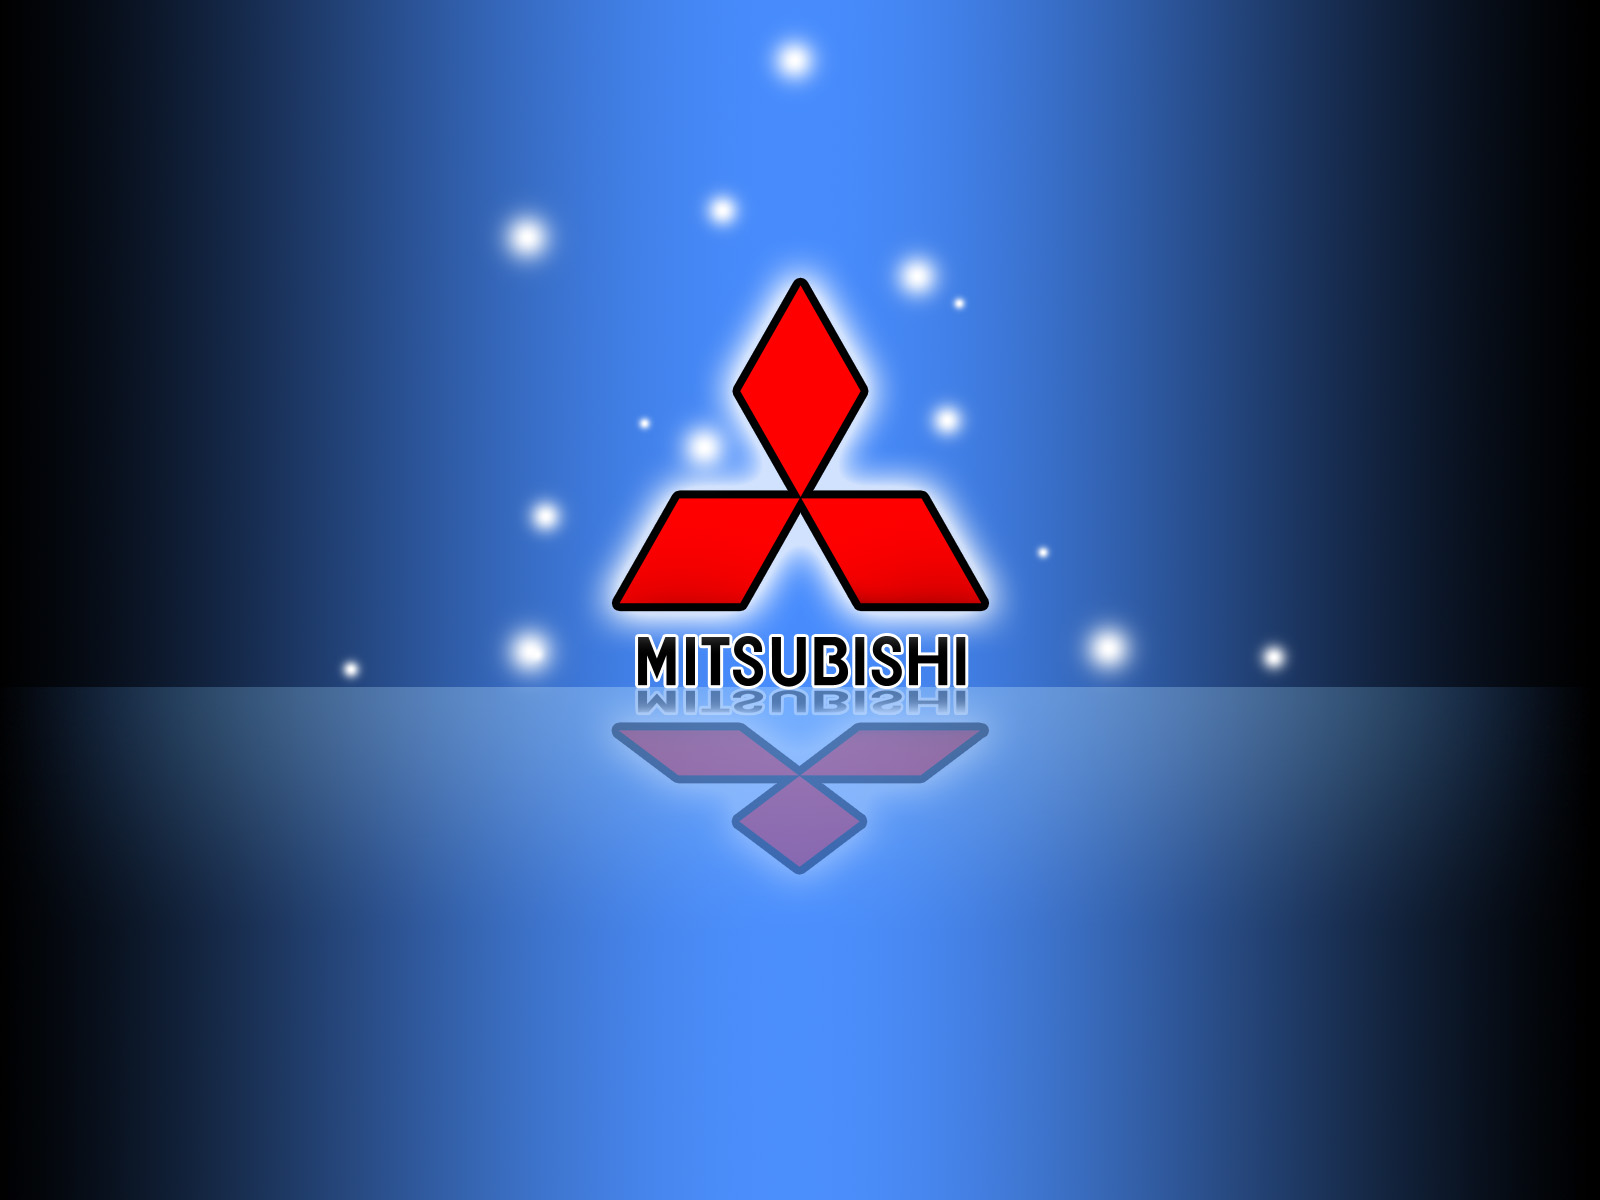 Mitsubishi nổi tiếng với các mẫu xe hơi giá mềm